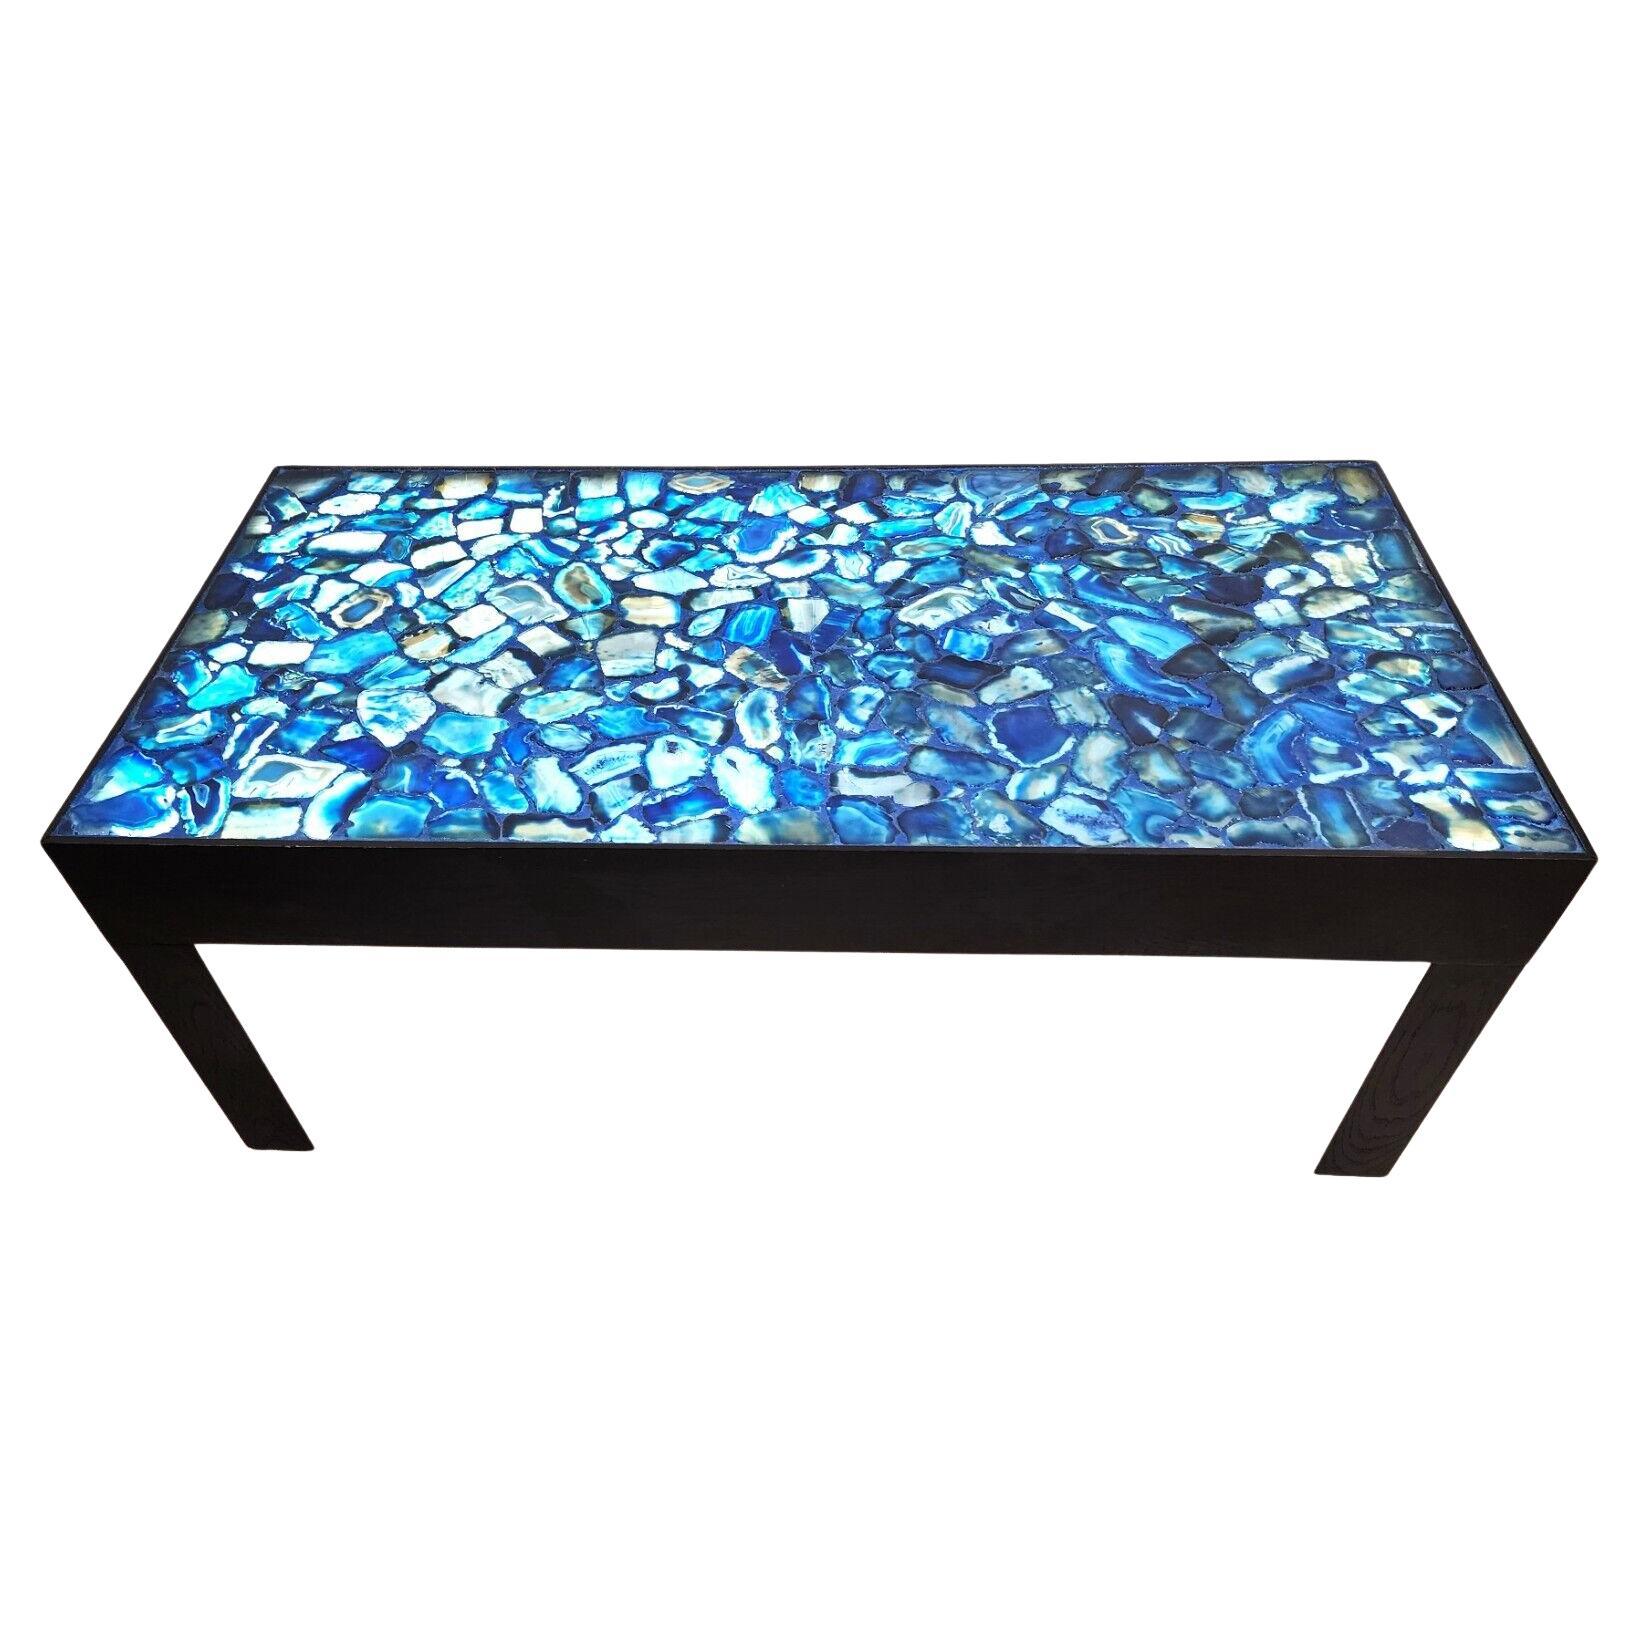 Table basse en agate bleue rétro-éclairée sur mesure